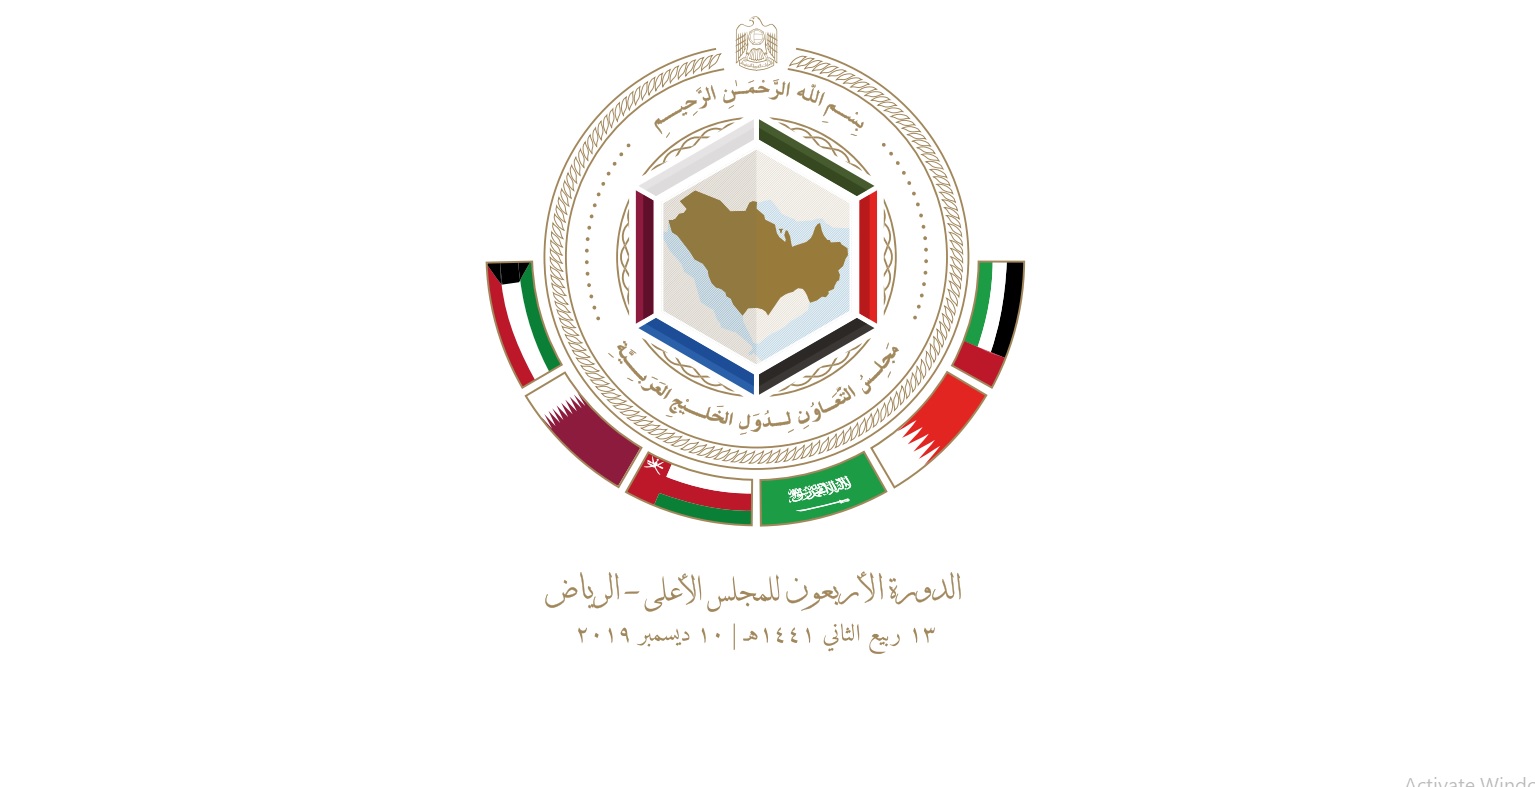 مجلس التعاون الخليجي: على المجتمع الدولي الوقوف بحزم في وجه محاولات الحوثي زعزعة المنطقة